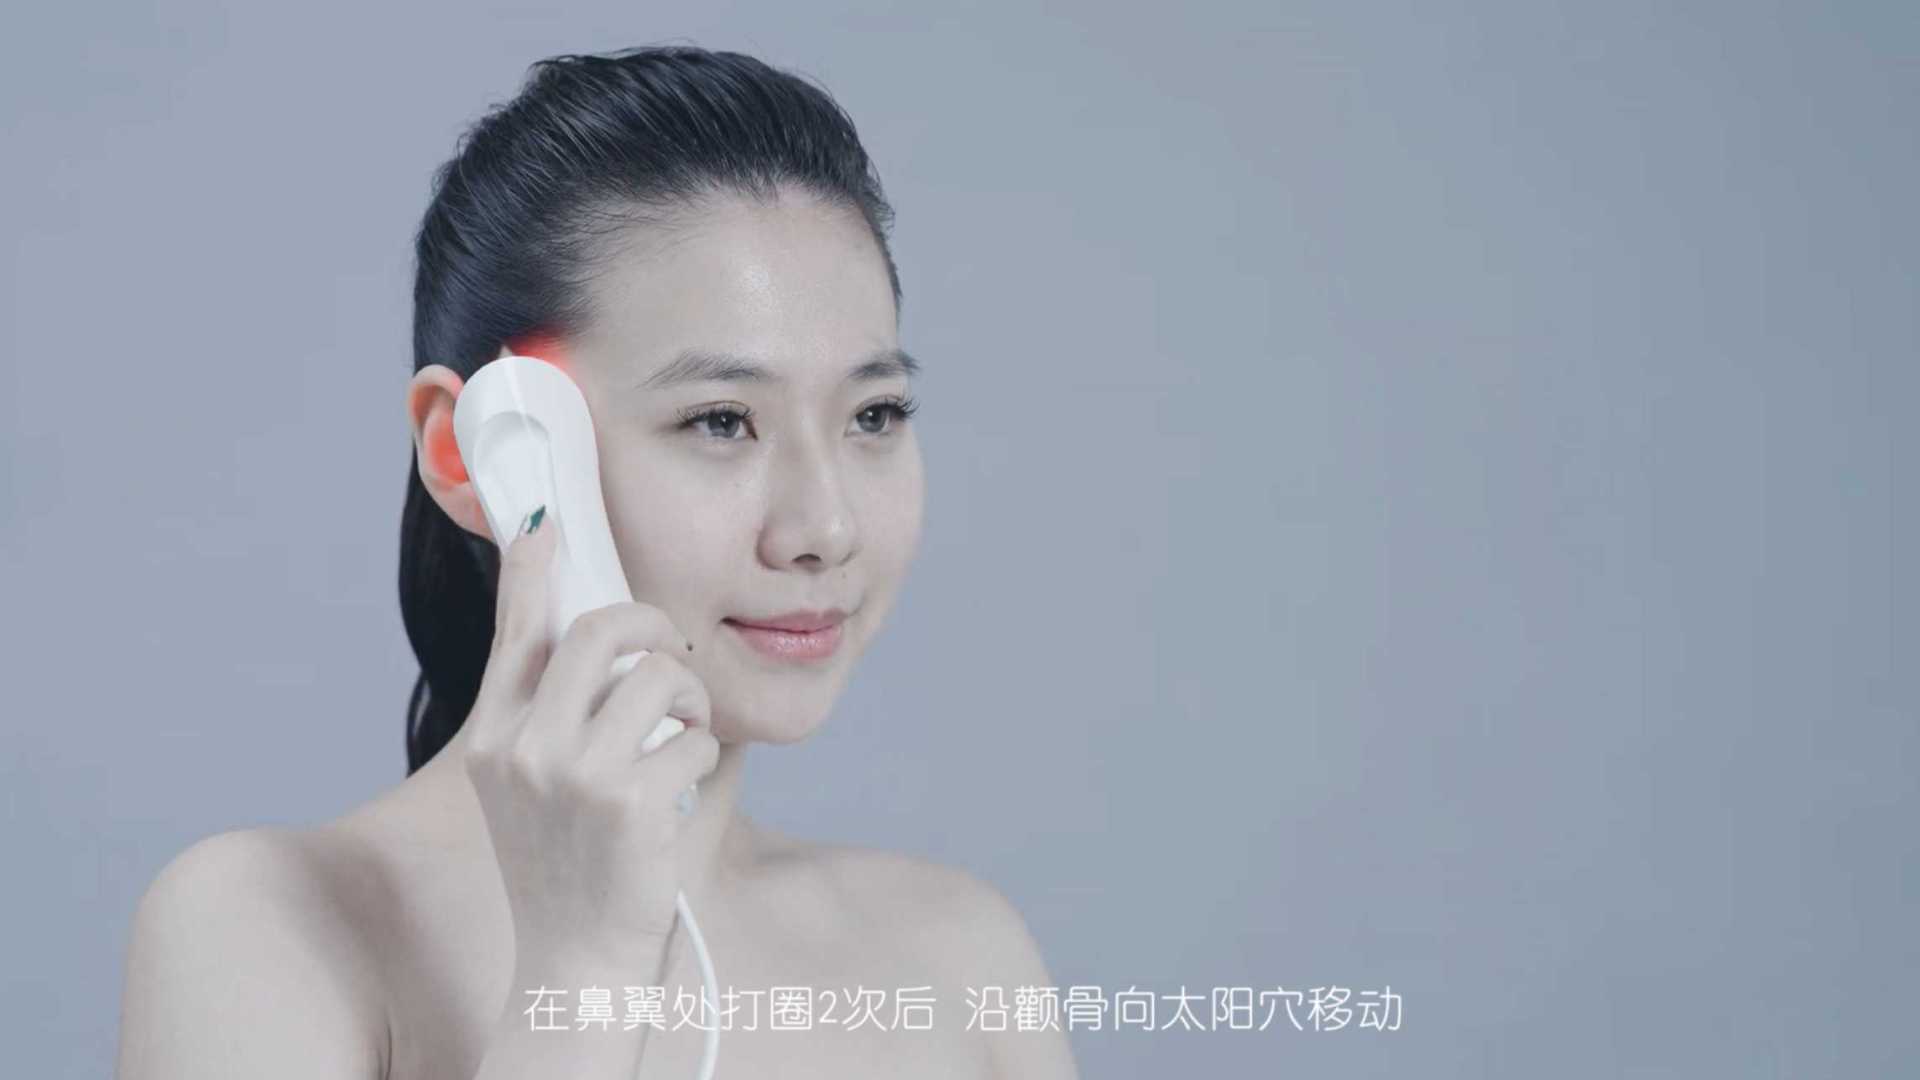 美容护肤仪产品使用视频